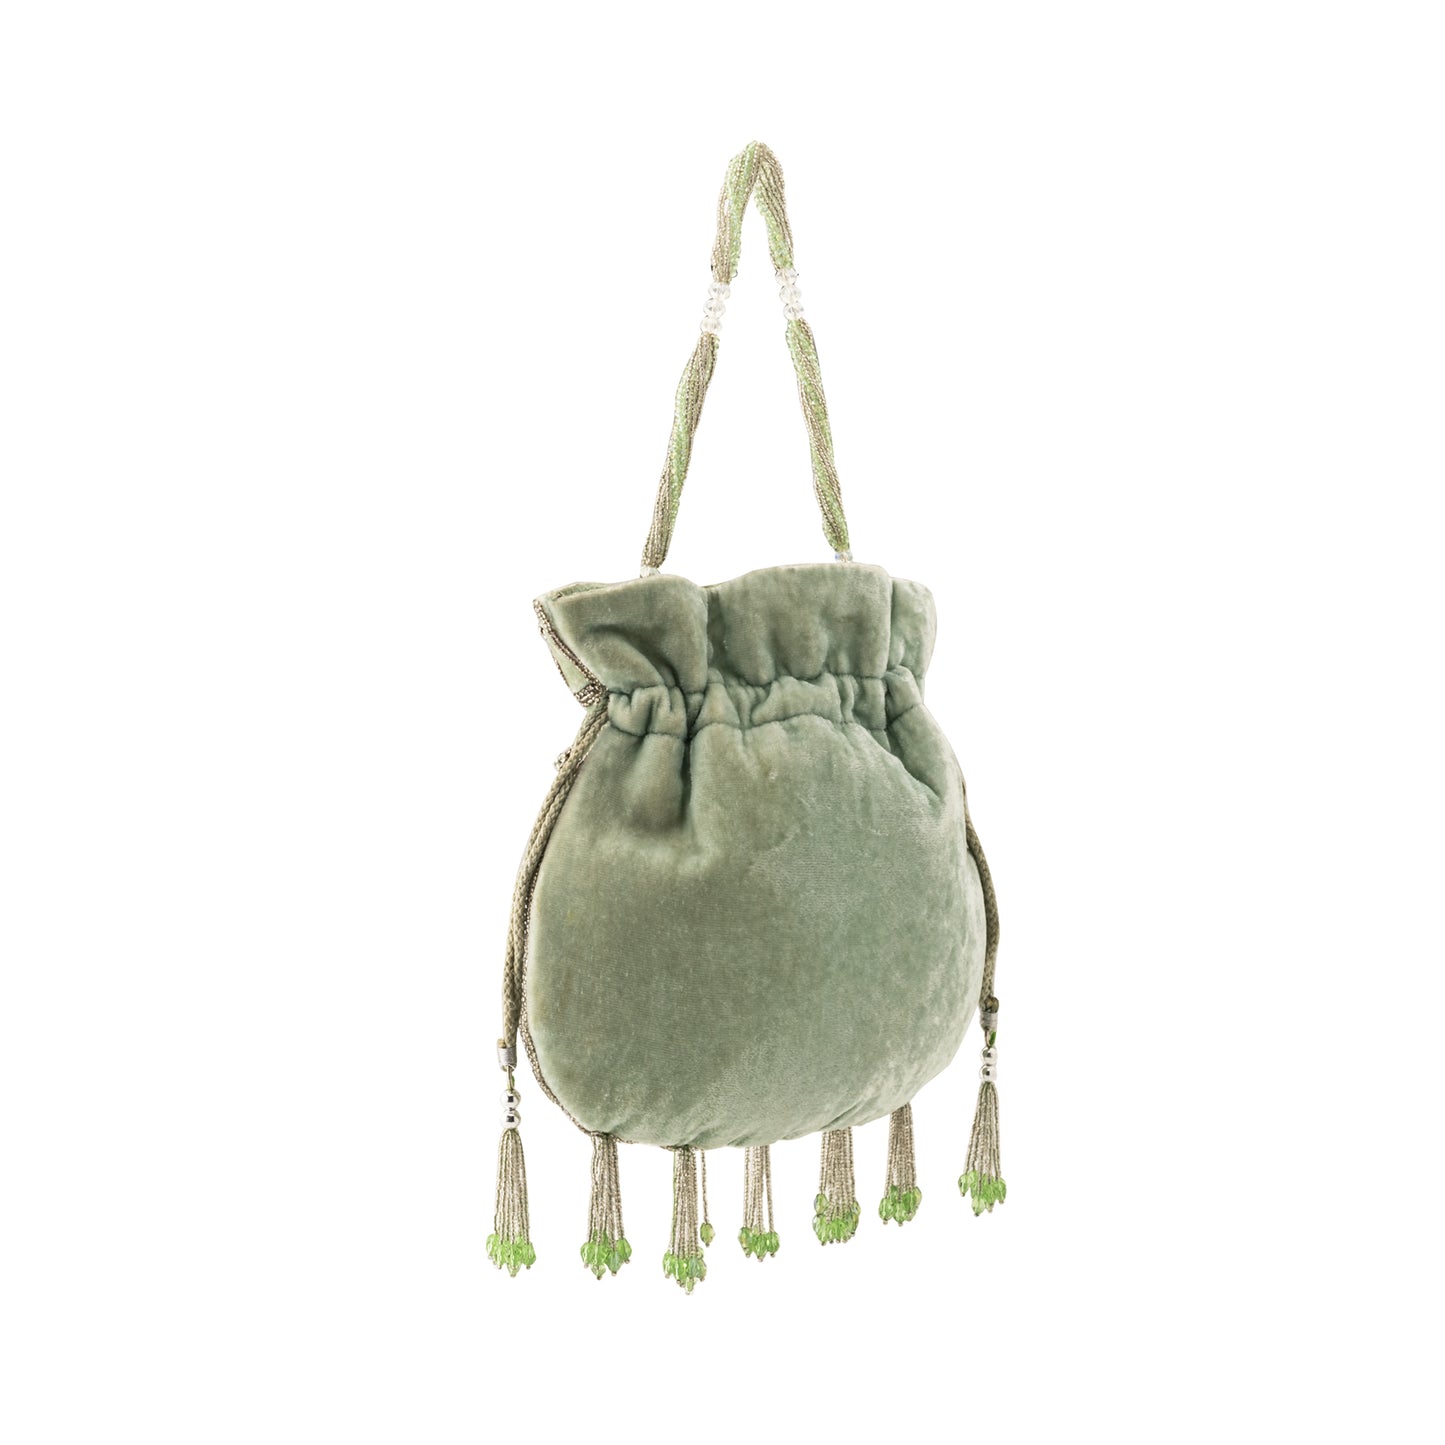 Ava embellished Green Potli bag